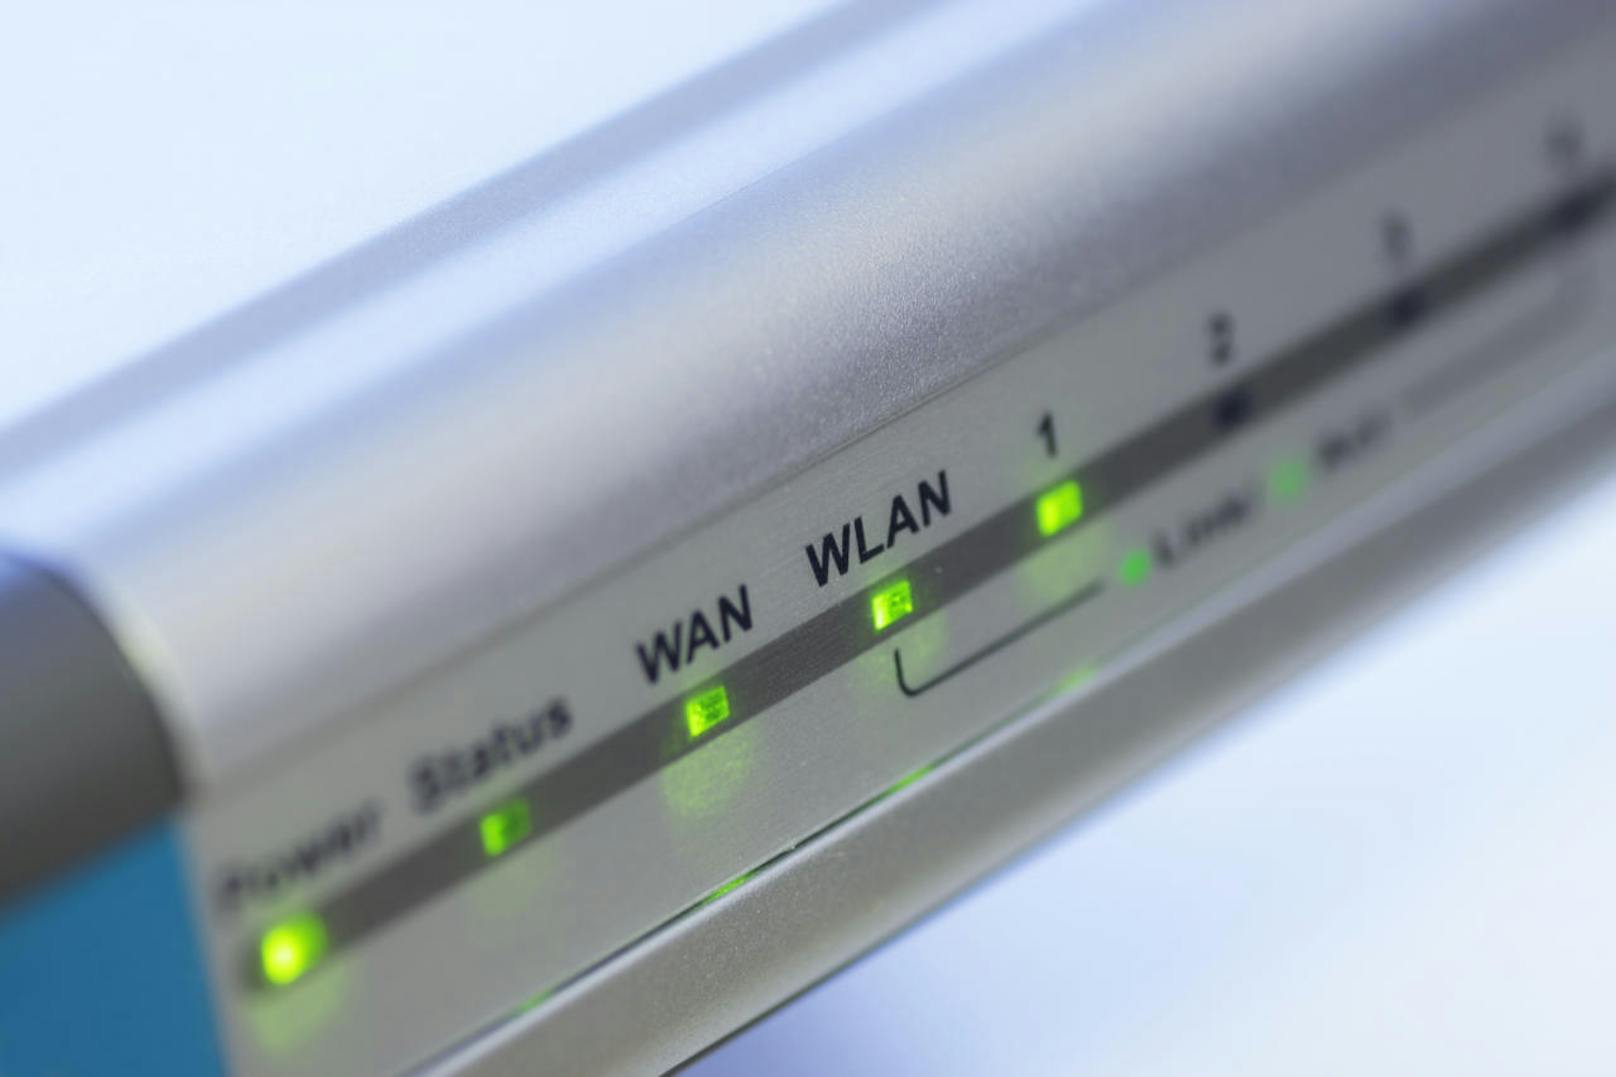 Muss der alte Router ausgetauscht werden, sollte das neue Modell unbedingt WLAN 5 (WLAN ac) unterstützen.